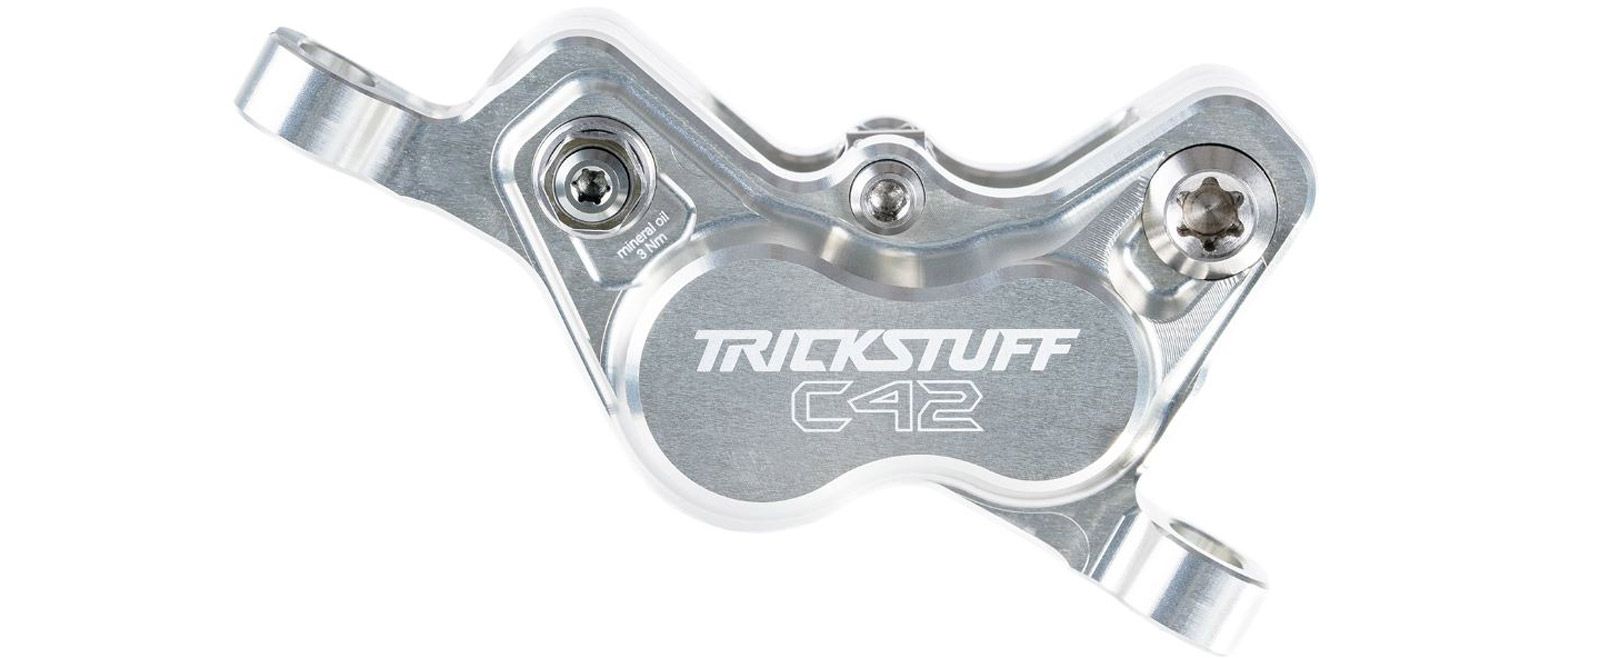 trickstuff c42 4-piston brake caliper for direttissima piccola carbon